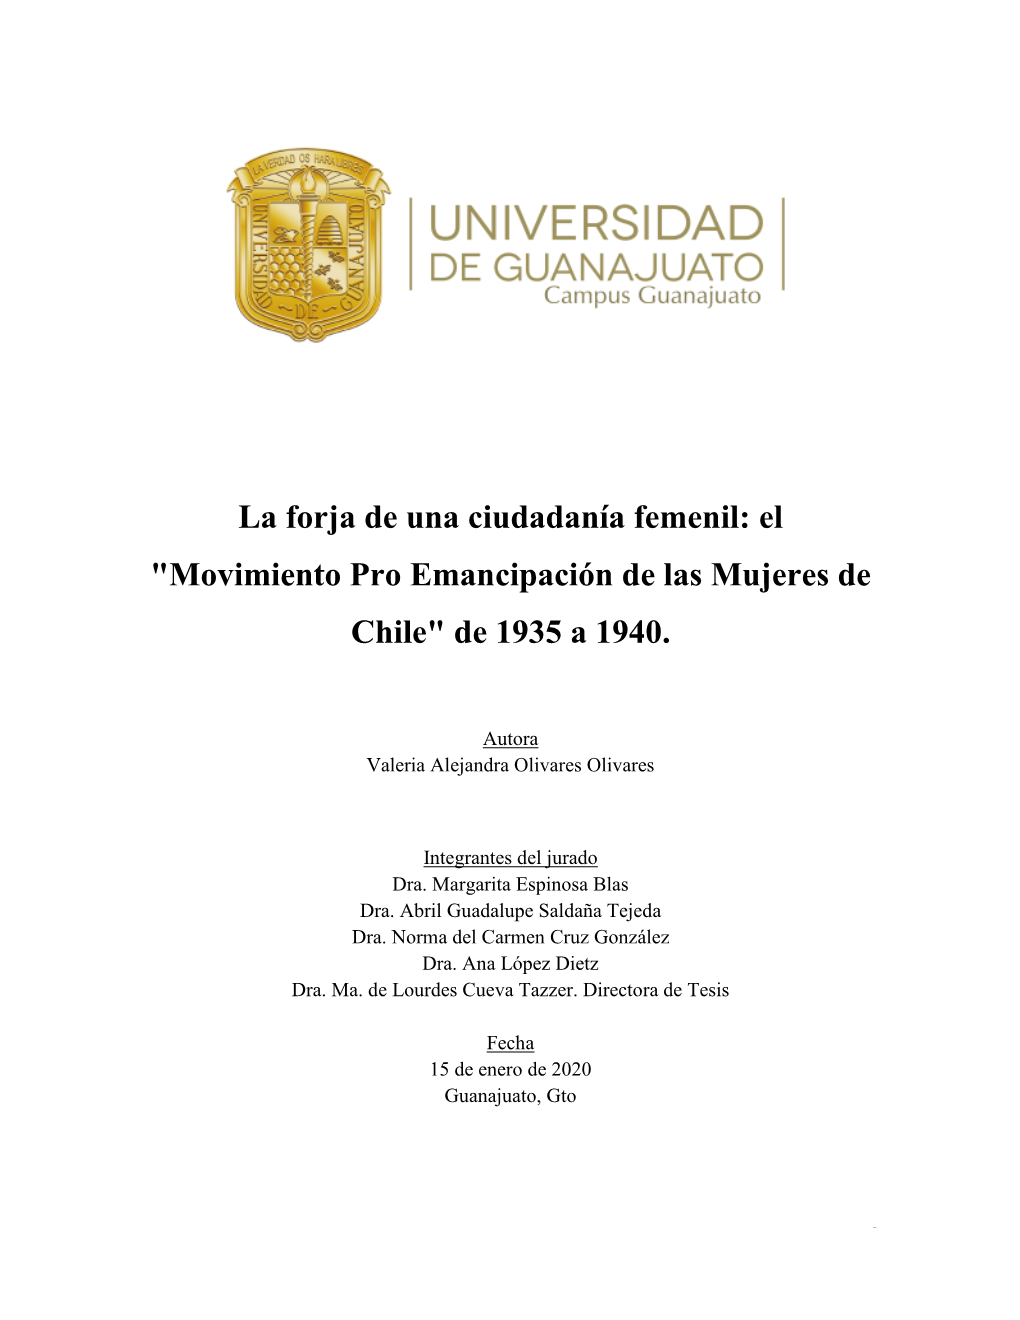 La Forja De Una Ciudadanía Femenil: El "Movimiento Pro Emancipación De Las Mujeres De Chile" De 1935 a 1940